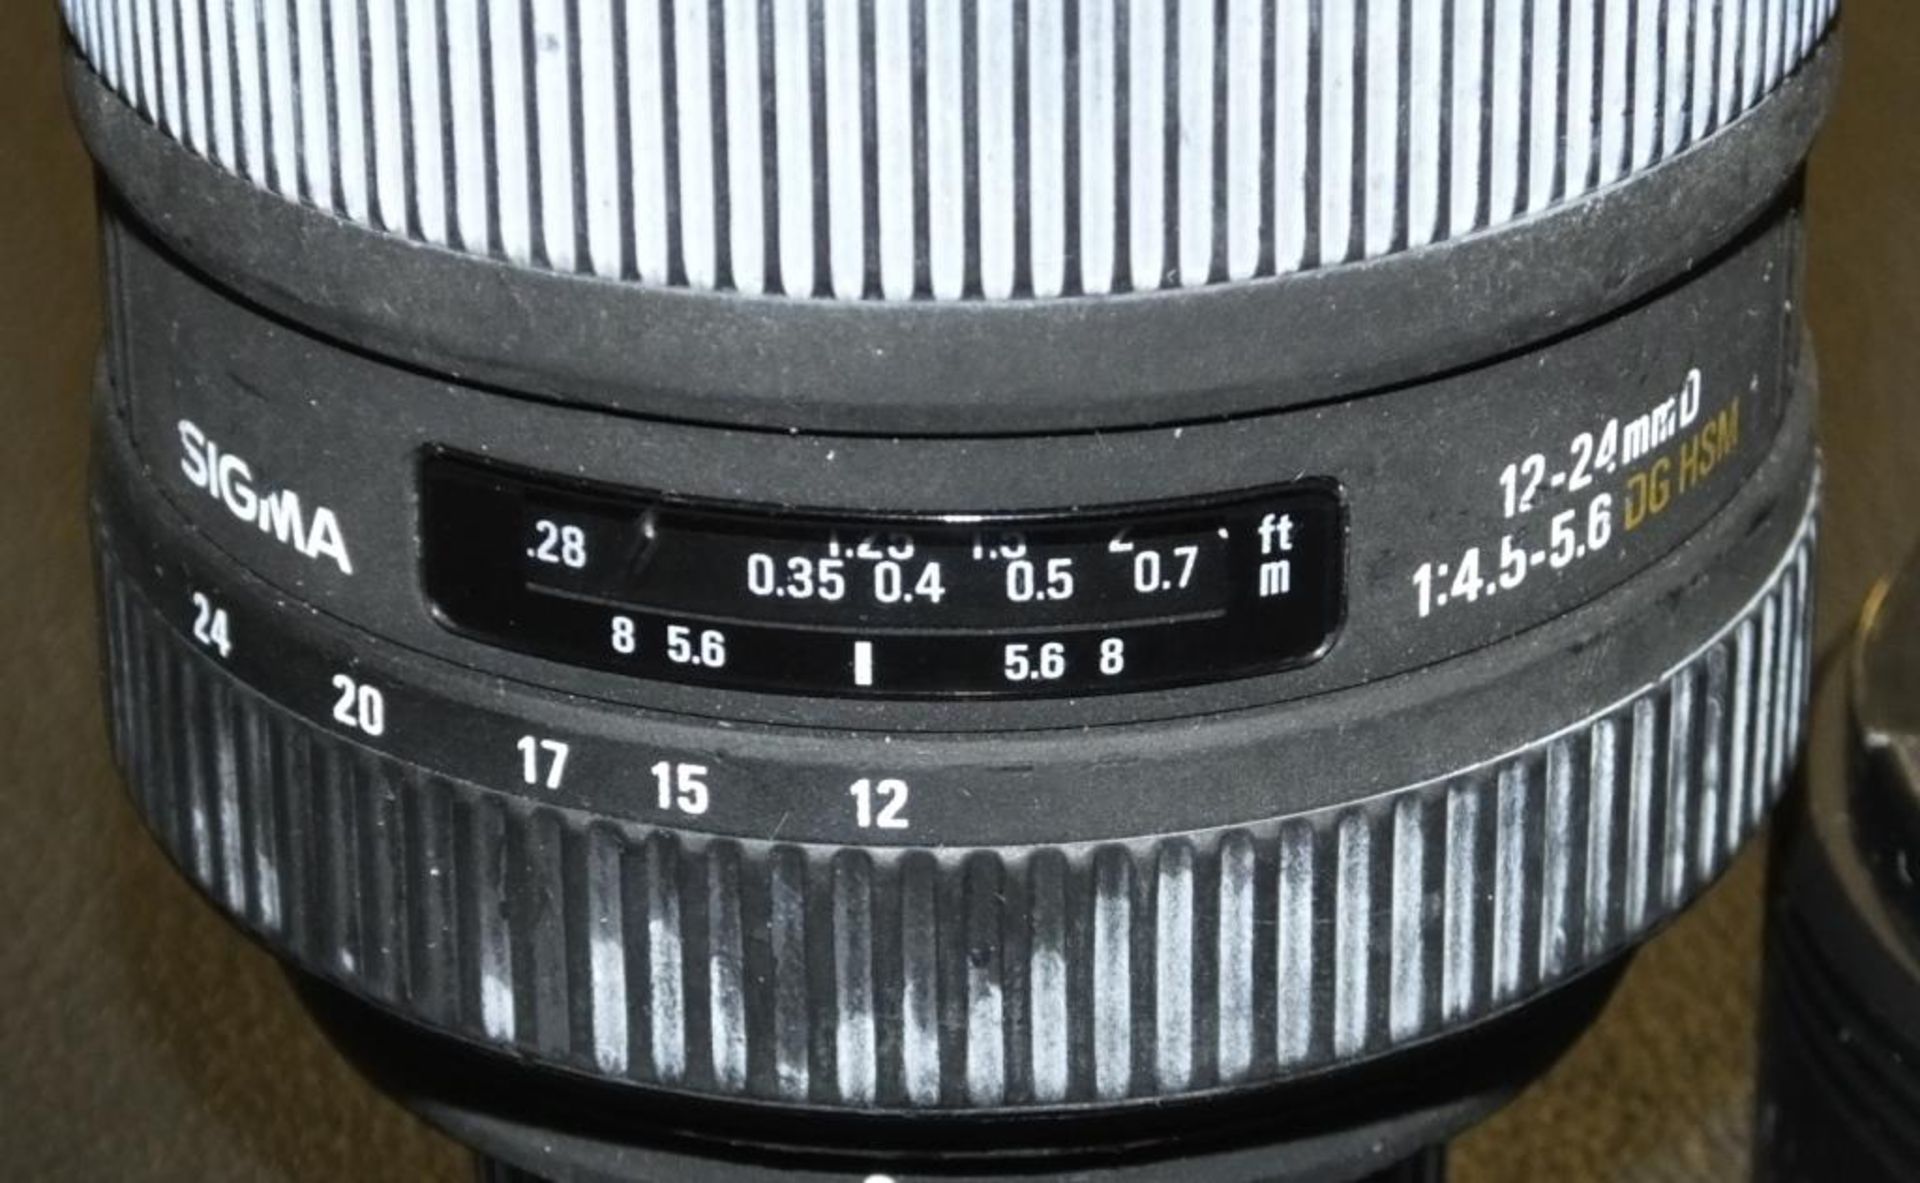 Sigma 12-24mm D 1:4.5-5.6 DG HSM Lens - Image 2 of 2